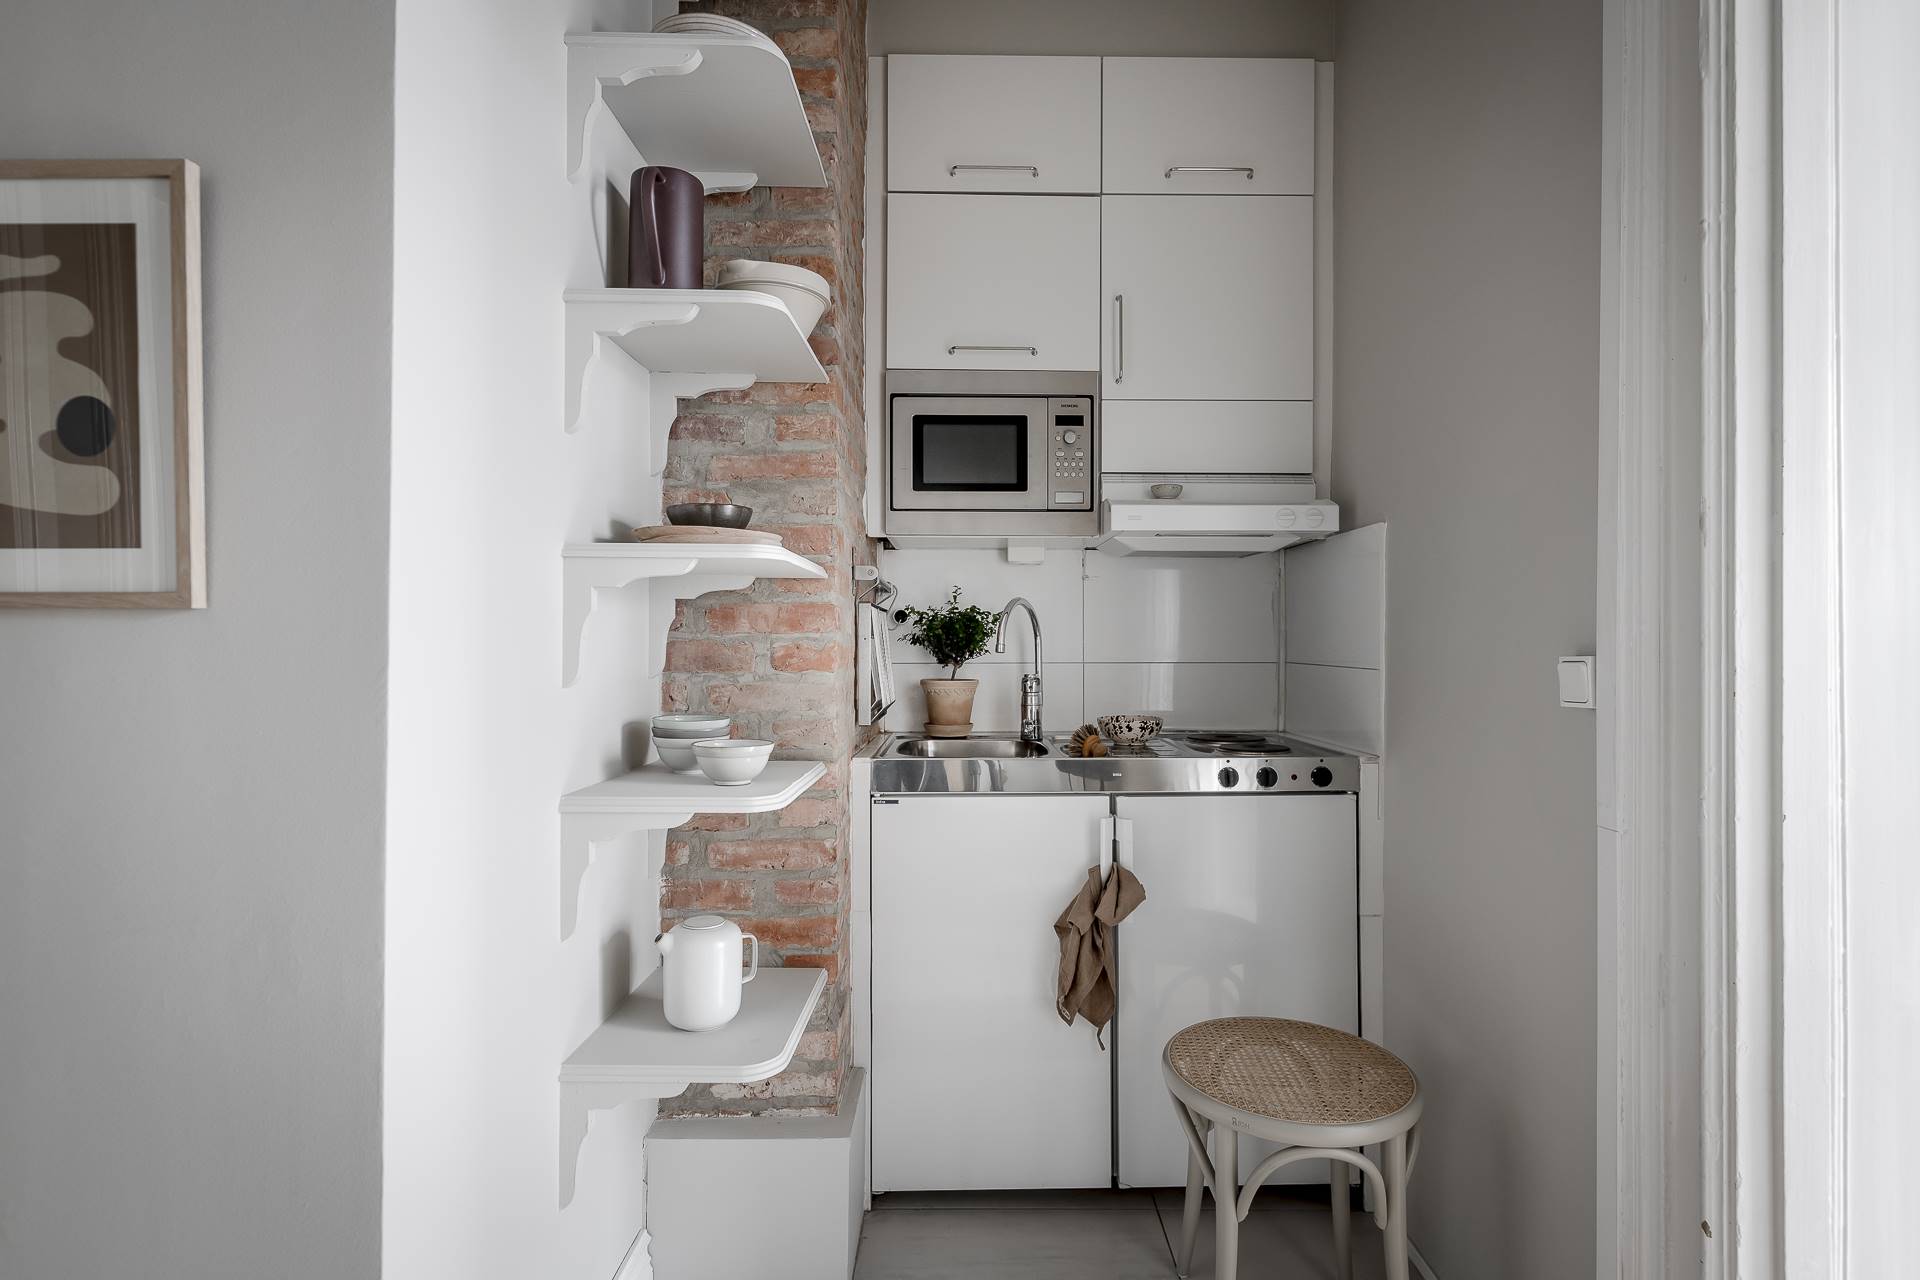 Cocina blanca pequeña con pared de ladrillo visto y baldas flotantes